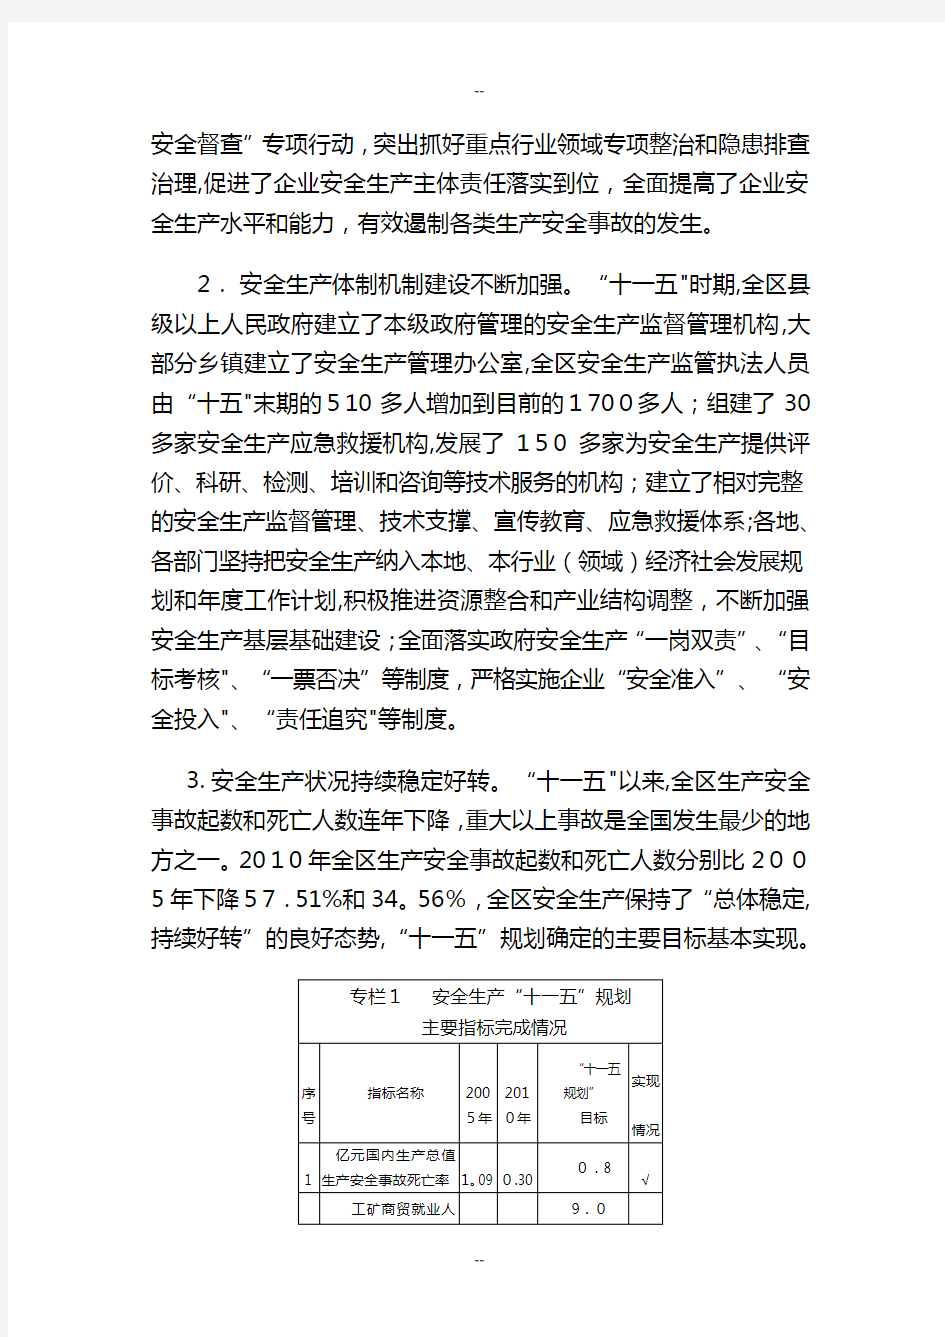 广西壮族自治区安全生产“十二五”规划